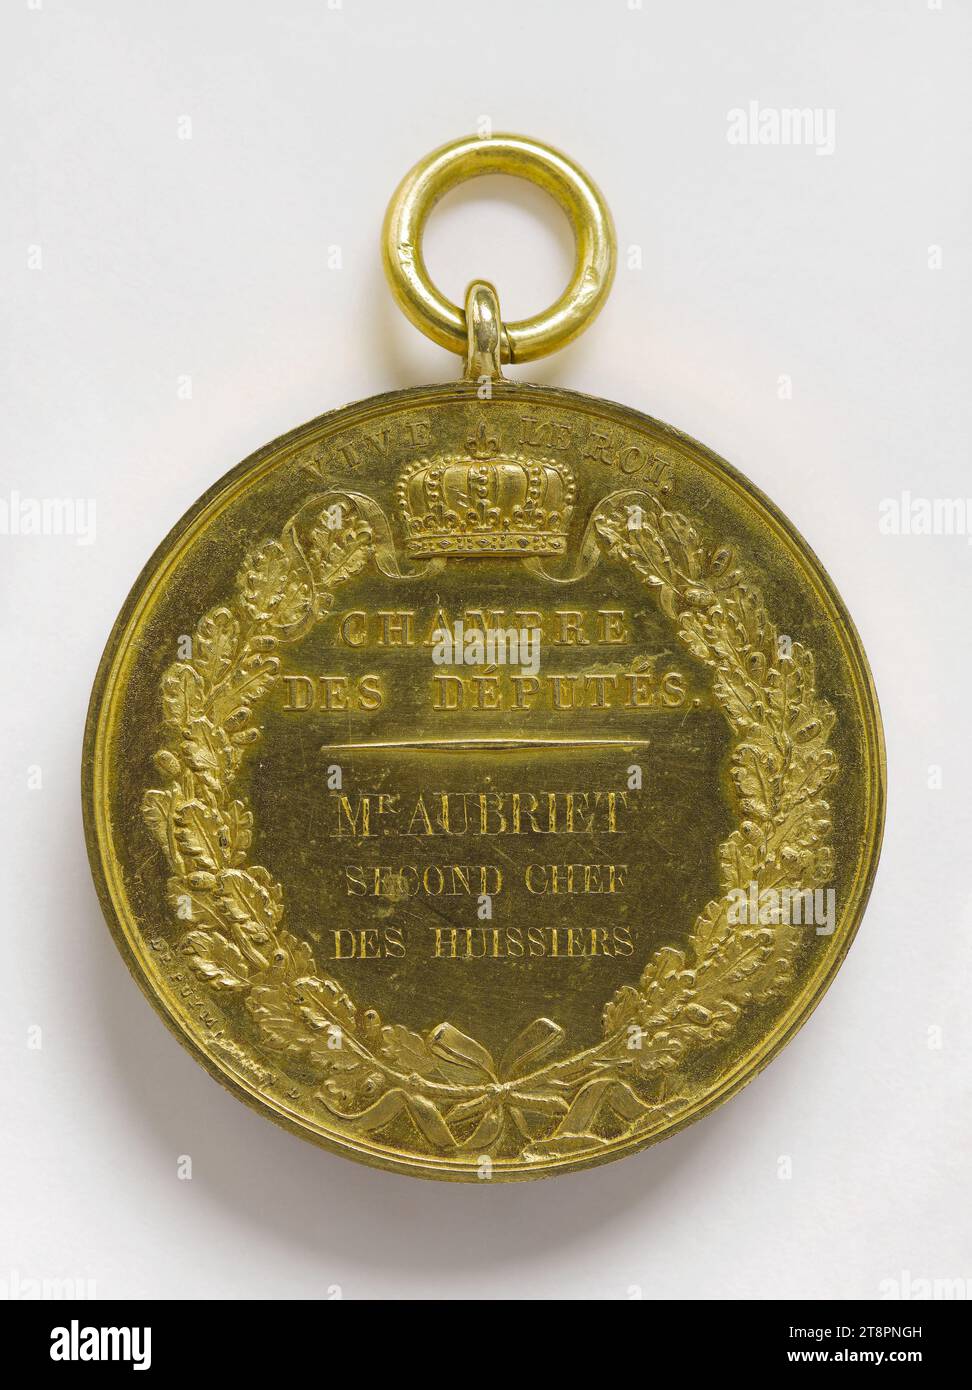 Medaglia d'ufficio di Marie-Antoine Aubriet, secondo usciere capo della camera dei deputati, circa 1814, Andrieu, Bertrand o Jean-Bertrand, incisore di medaglie, nel 1814, Numismatic, Medal Foto Stock